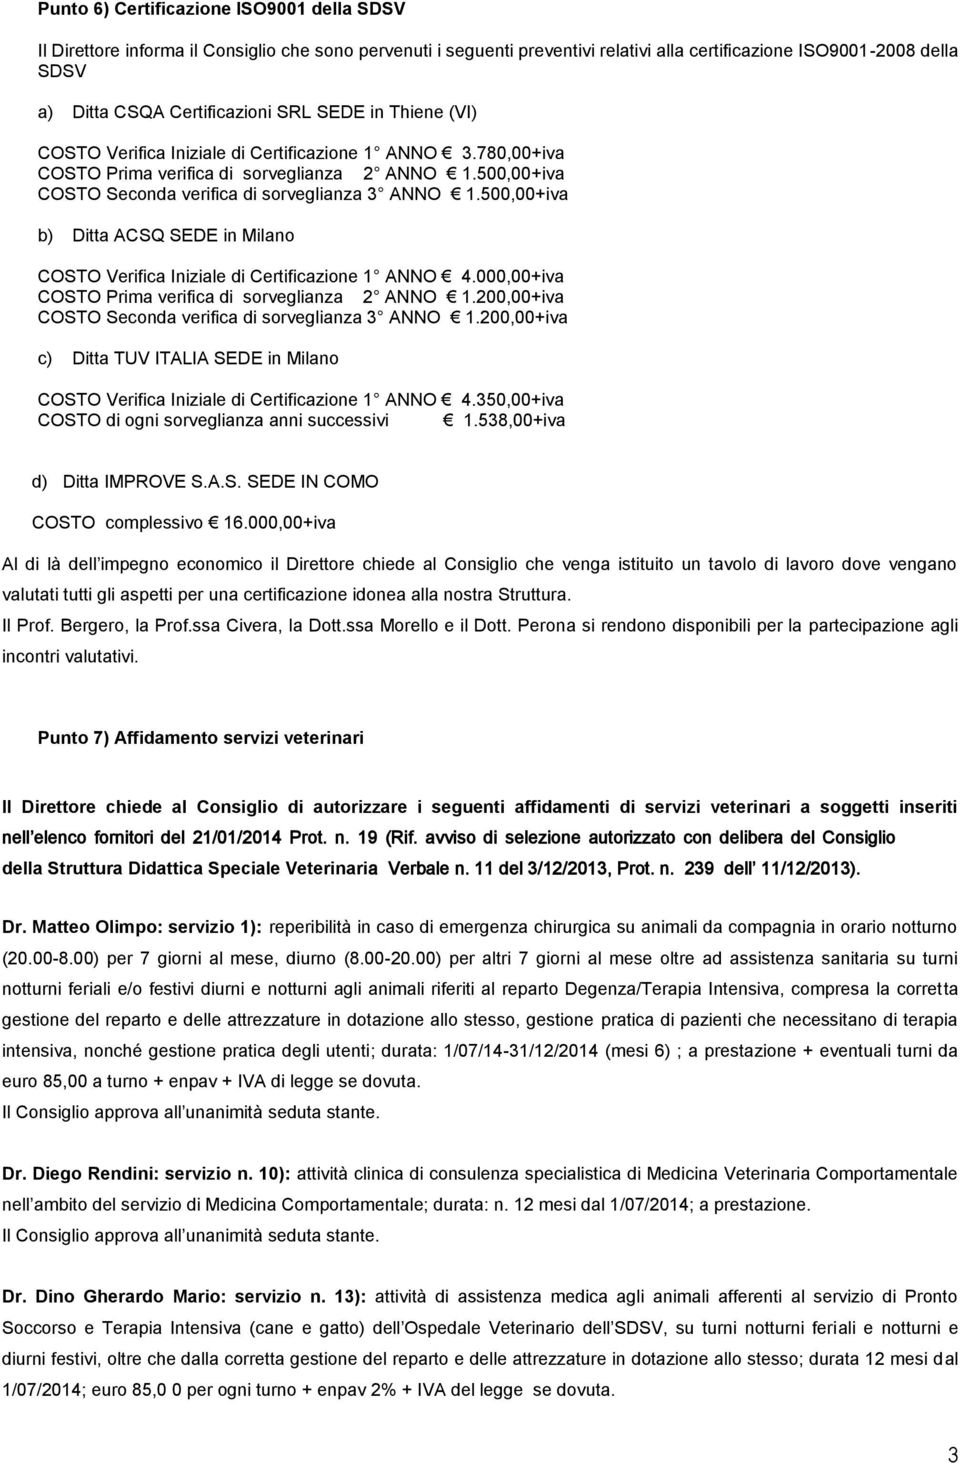 500,00+iva b) Ditta ACSQ SEDE in Milano COSTO Verifica Iniziale di Certificazione 1 ANNO 4.000,00+iva COSTO Prima verifica di sorveglianza 2 ANNO 1.